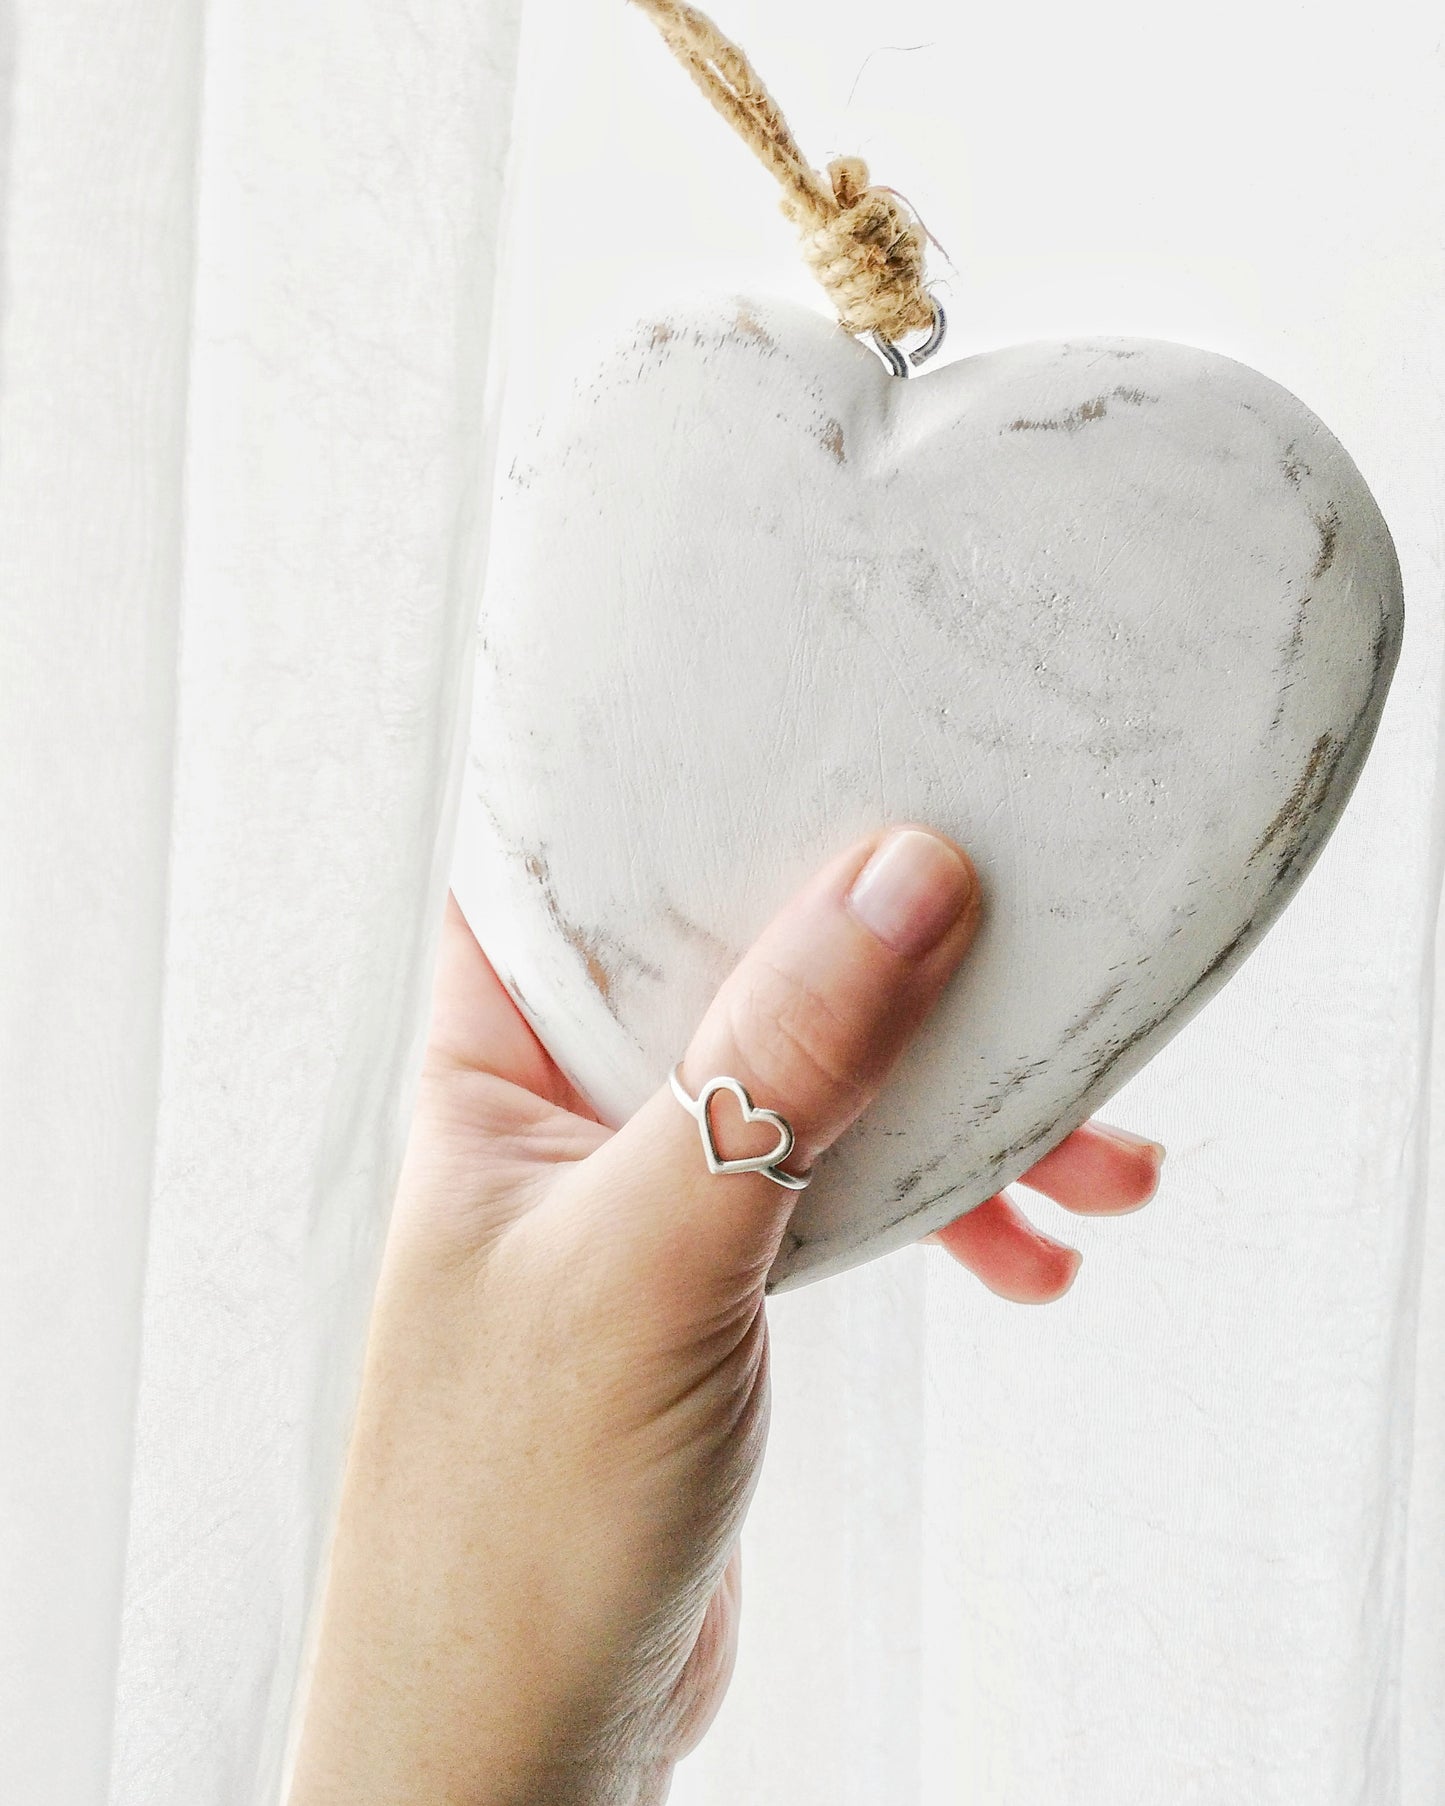 Imagen en primer plano de mano de perfil sosteniendo un corazón de madera color blanco. La mano lleva el anillo CORAZÓN en el dedo pulgar. Fondo blanco.